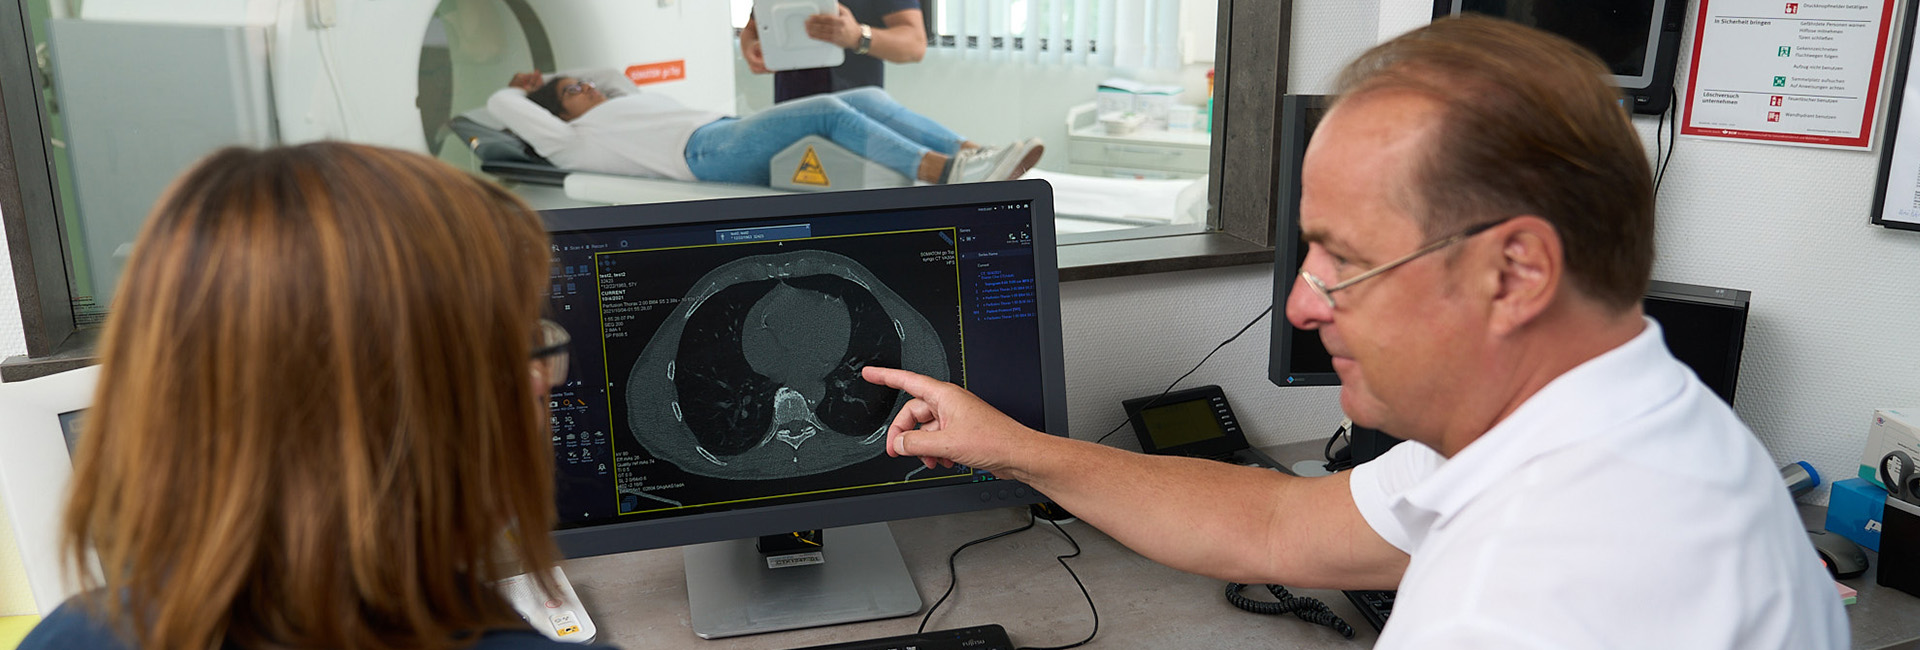 Radiologisches Gutachten, MRT (Magnetresonanztomographie) | Strahlenexposition | Praxis für Radiologie & Nuklearmedizin